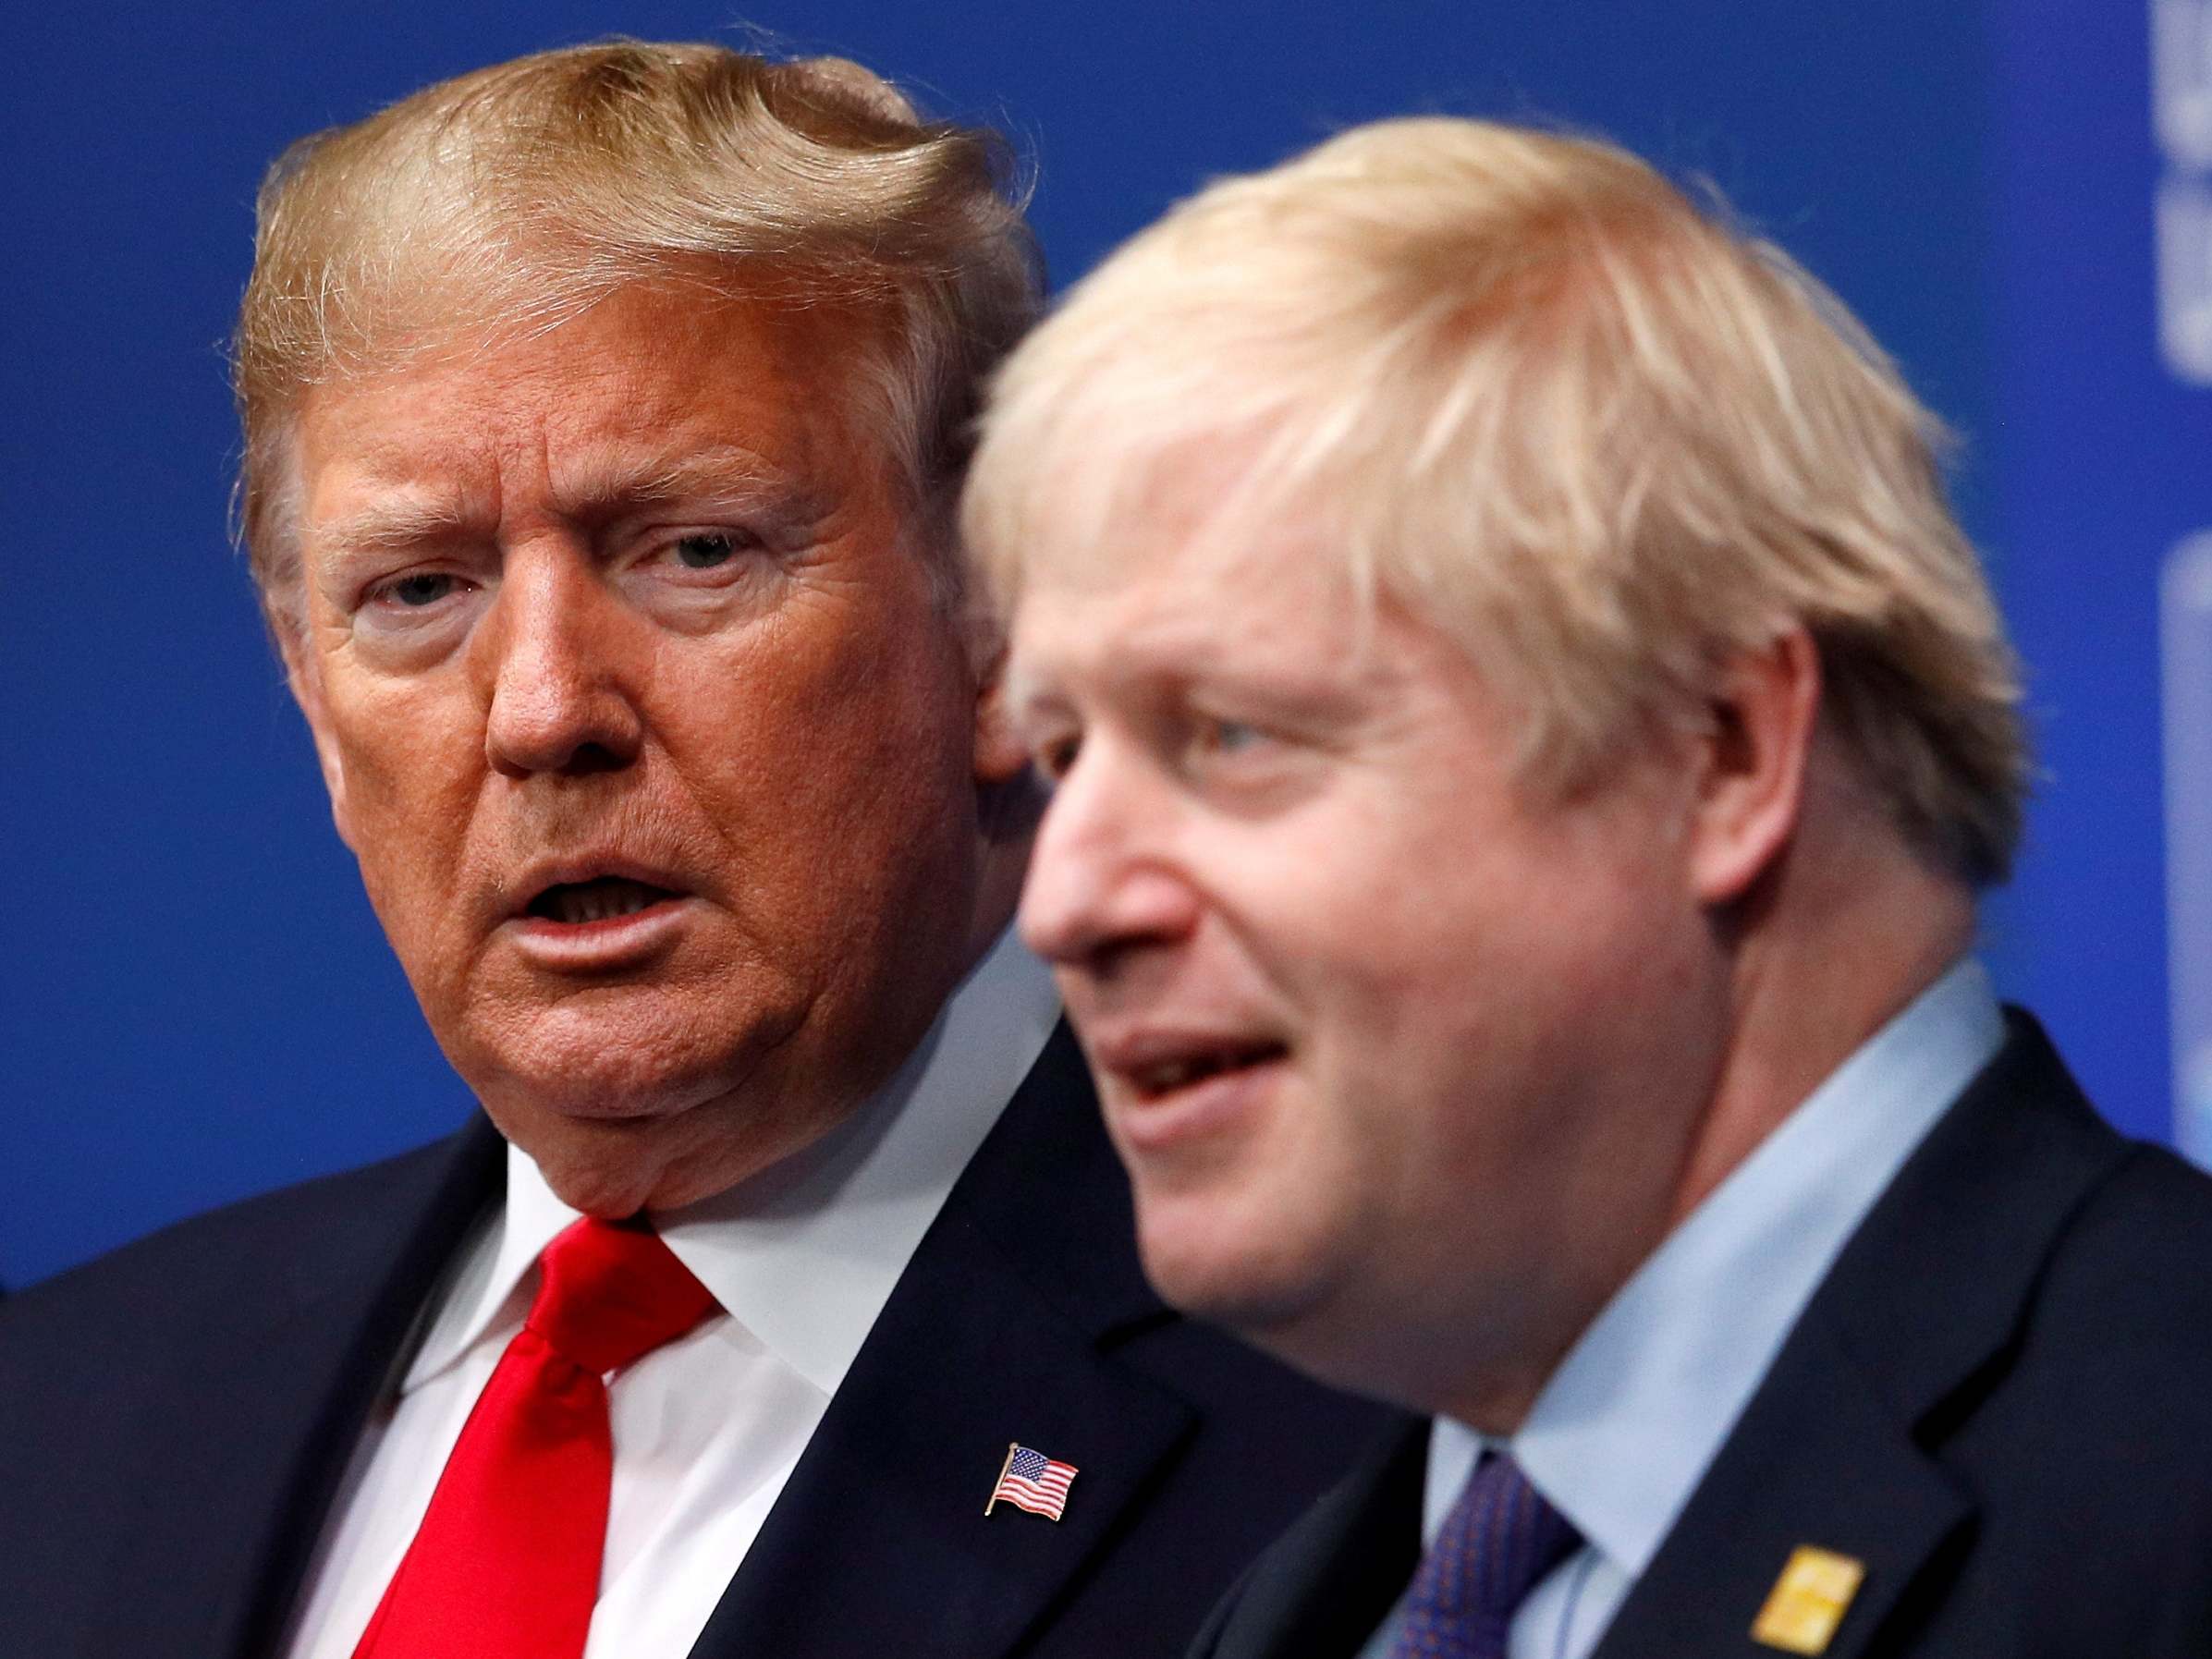 Boris Johnson news - live: Trump team pressures UK on Huawei as Varadkar says Ireland is on 'stronger team' ahead of Brexit trade talks